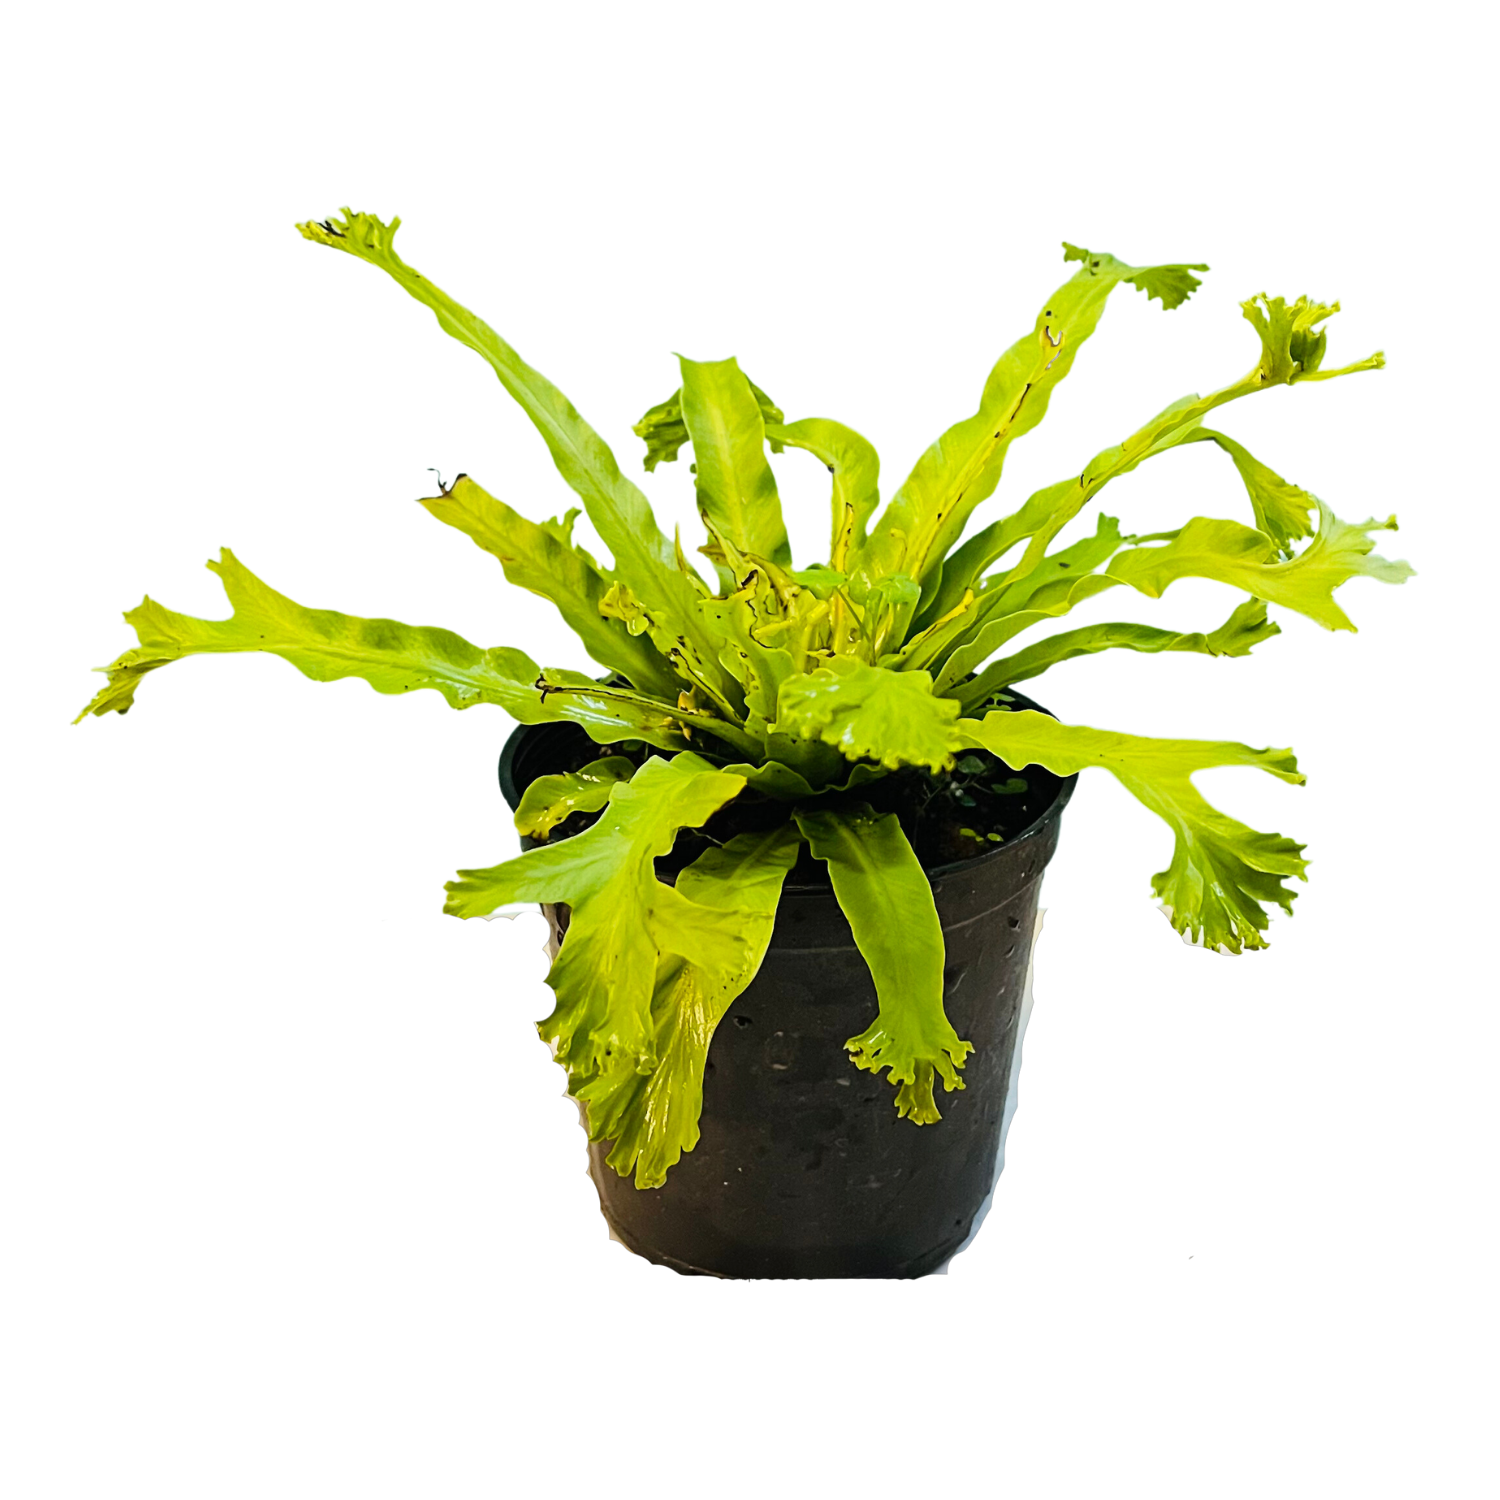 Asplenium Nidus Crissie Fern- Live Plant In 5 Inch Pot (Home & Garden)